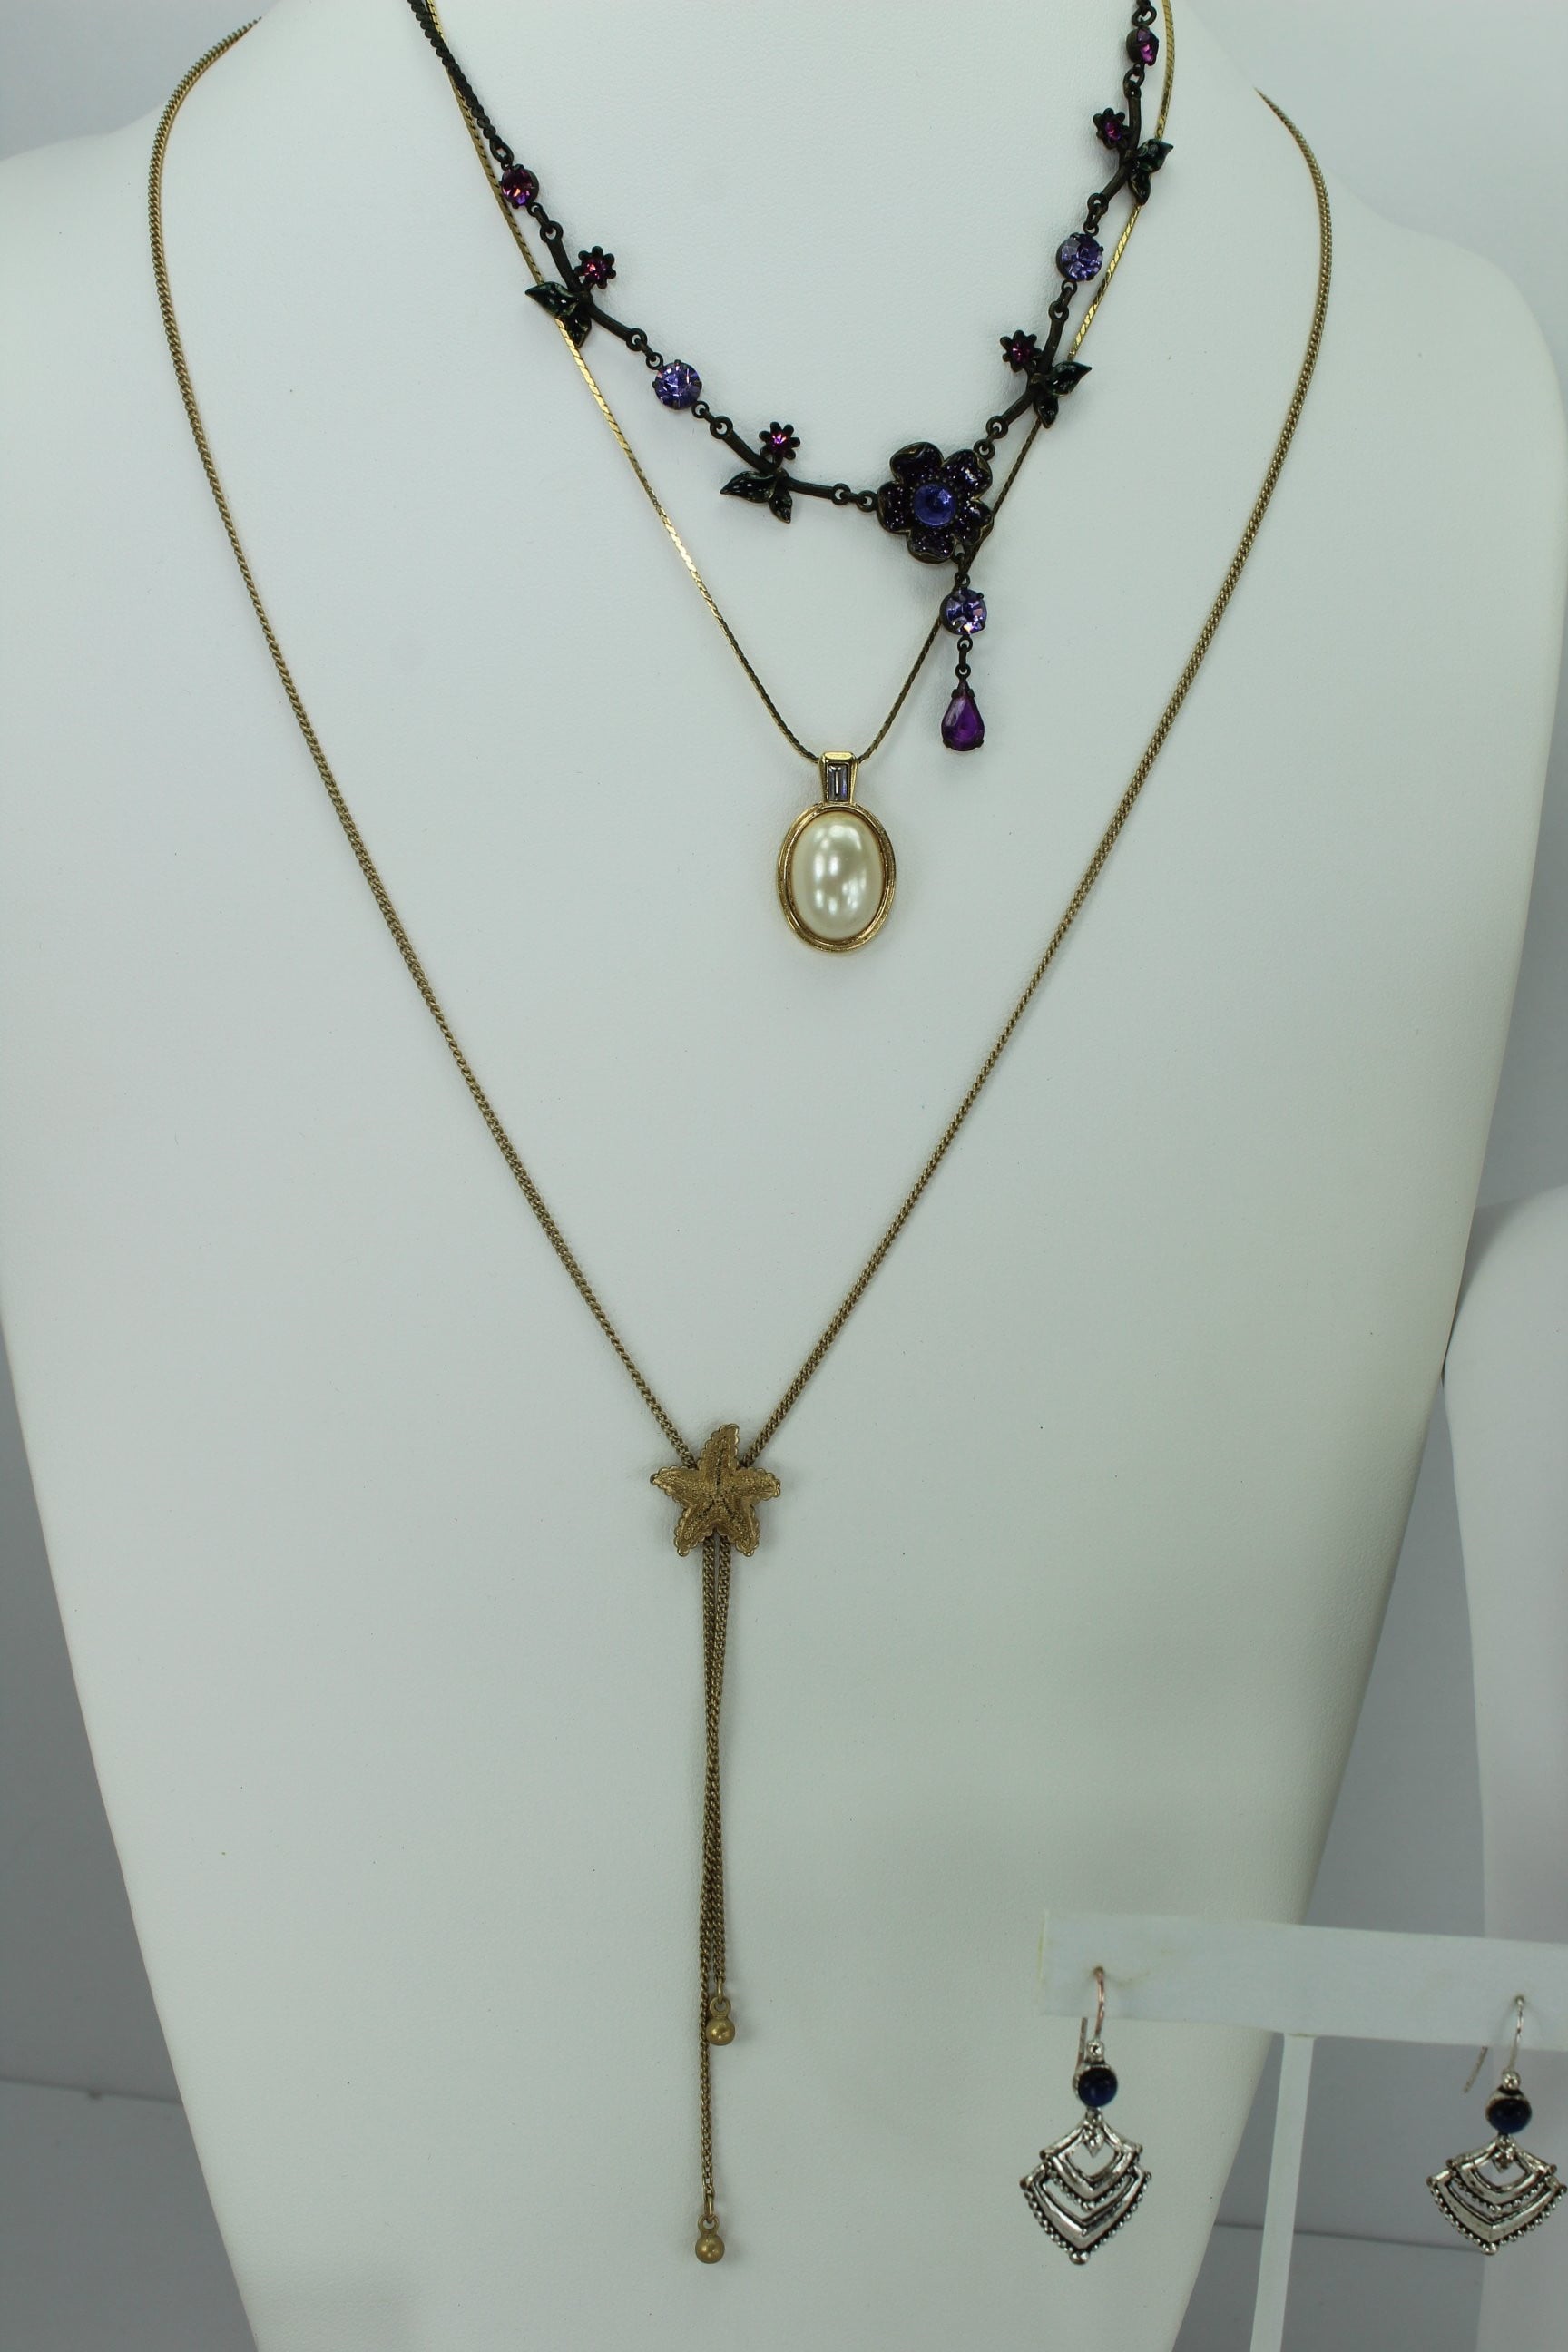 Vintage AVON Jewelry Lot 17 Pieces Wearables Resales Necklaces Bracelet Pins ER pearl